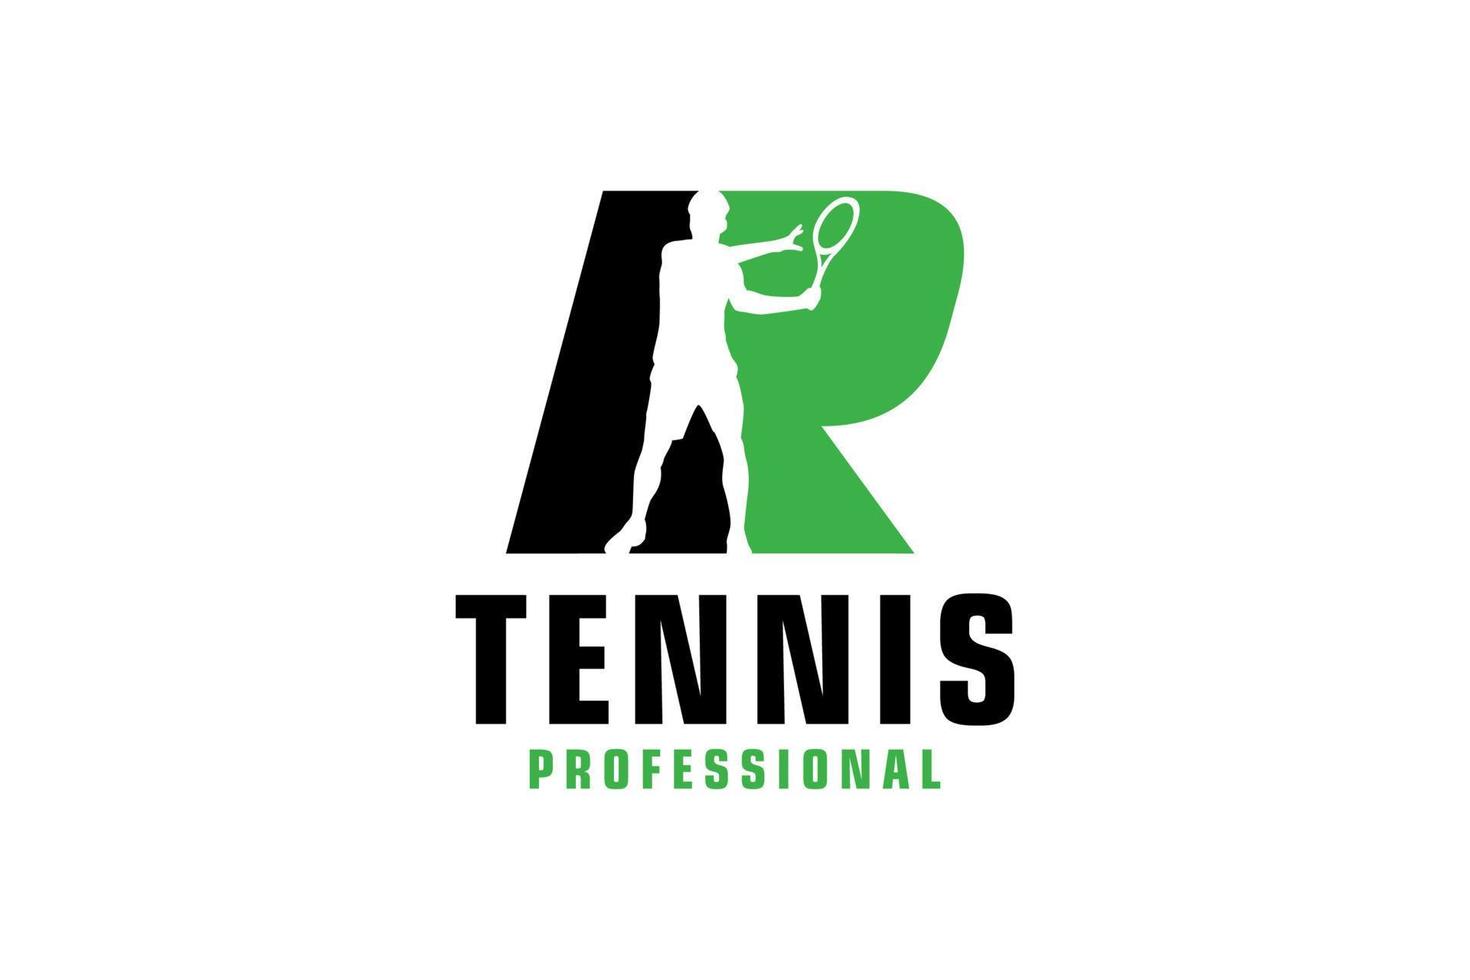 buchstabe r mit tennisspieler-silhouette-logo-design. Vektordesign-Vorlagenelemente für Sportteams oder Corporate Identity. vektor